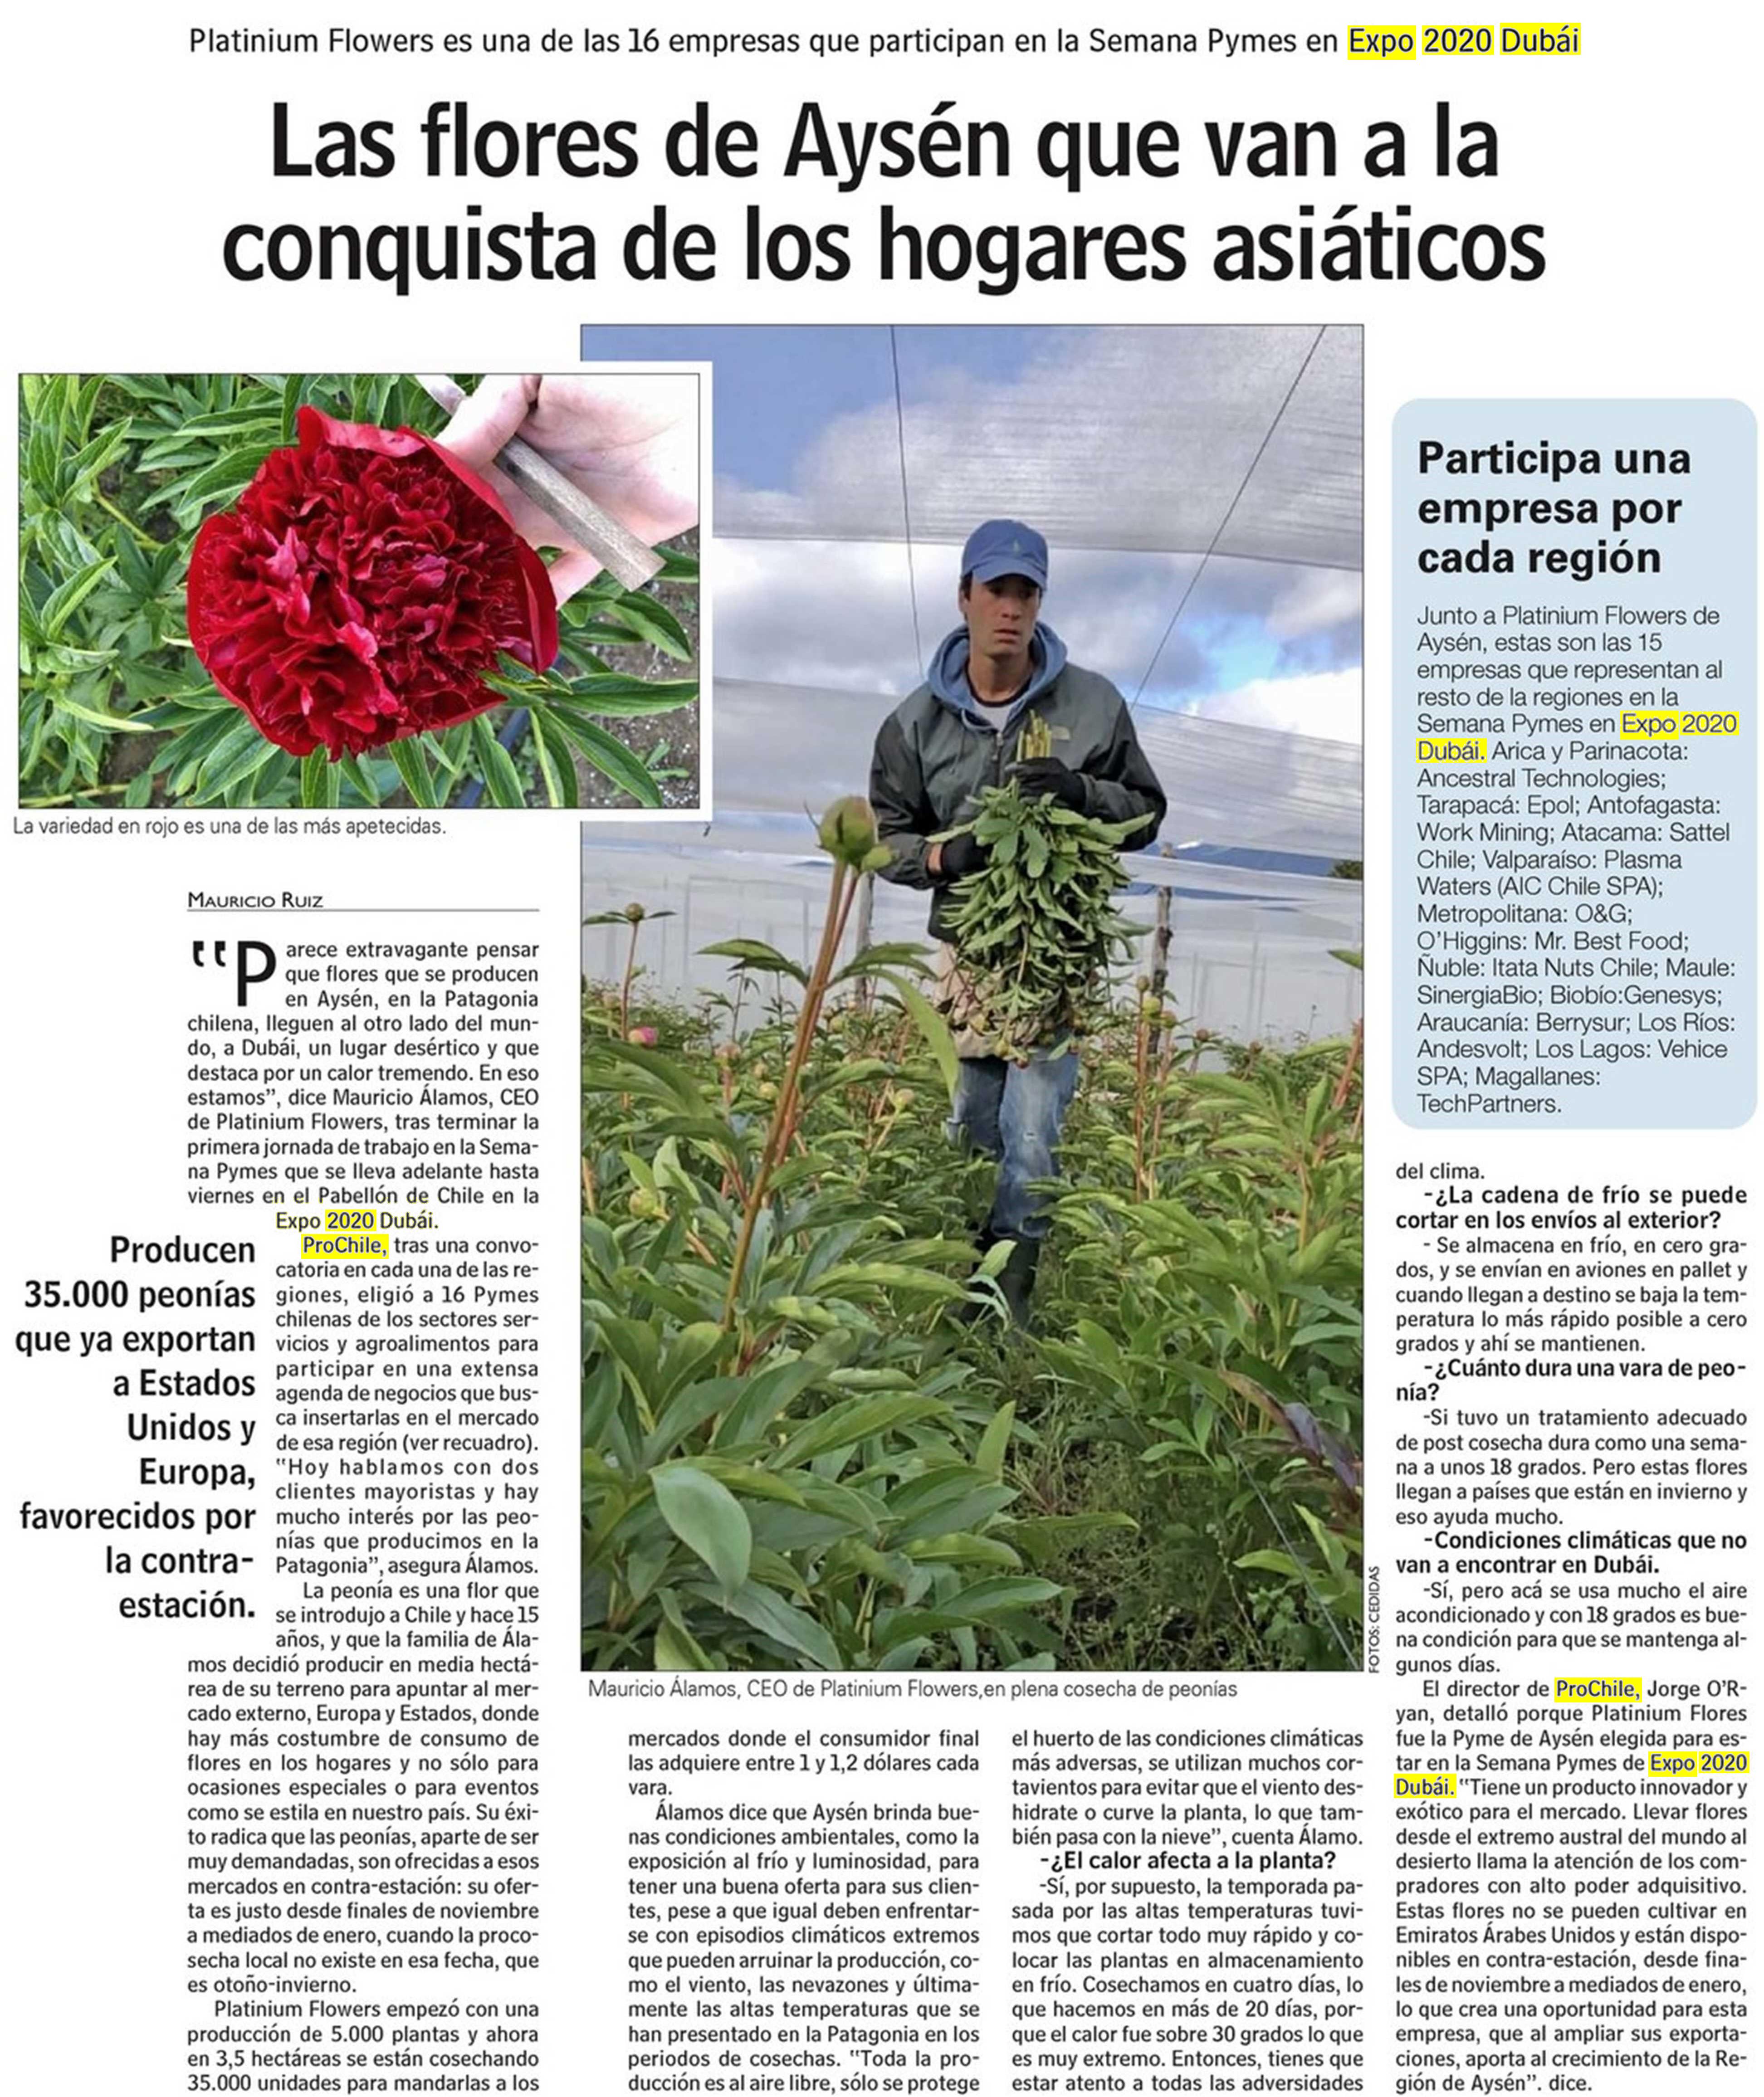 Destacado en prensa: "Las flores de Aysén que van a la conquista de los hogares asiáticos"